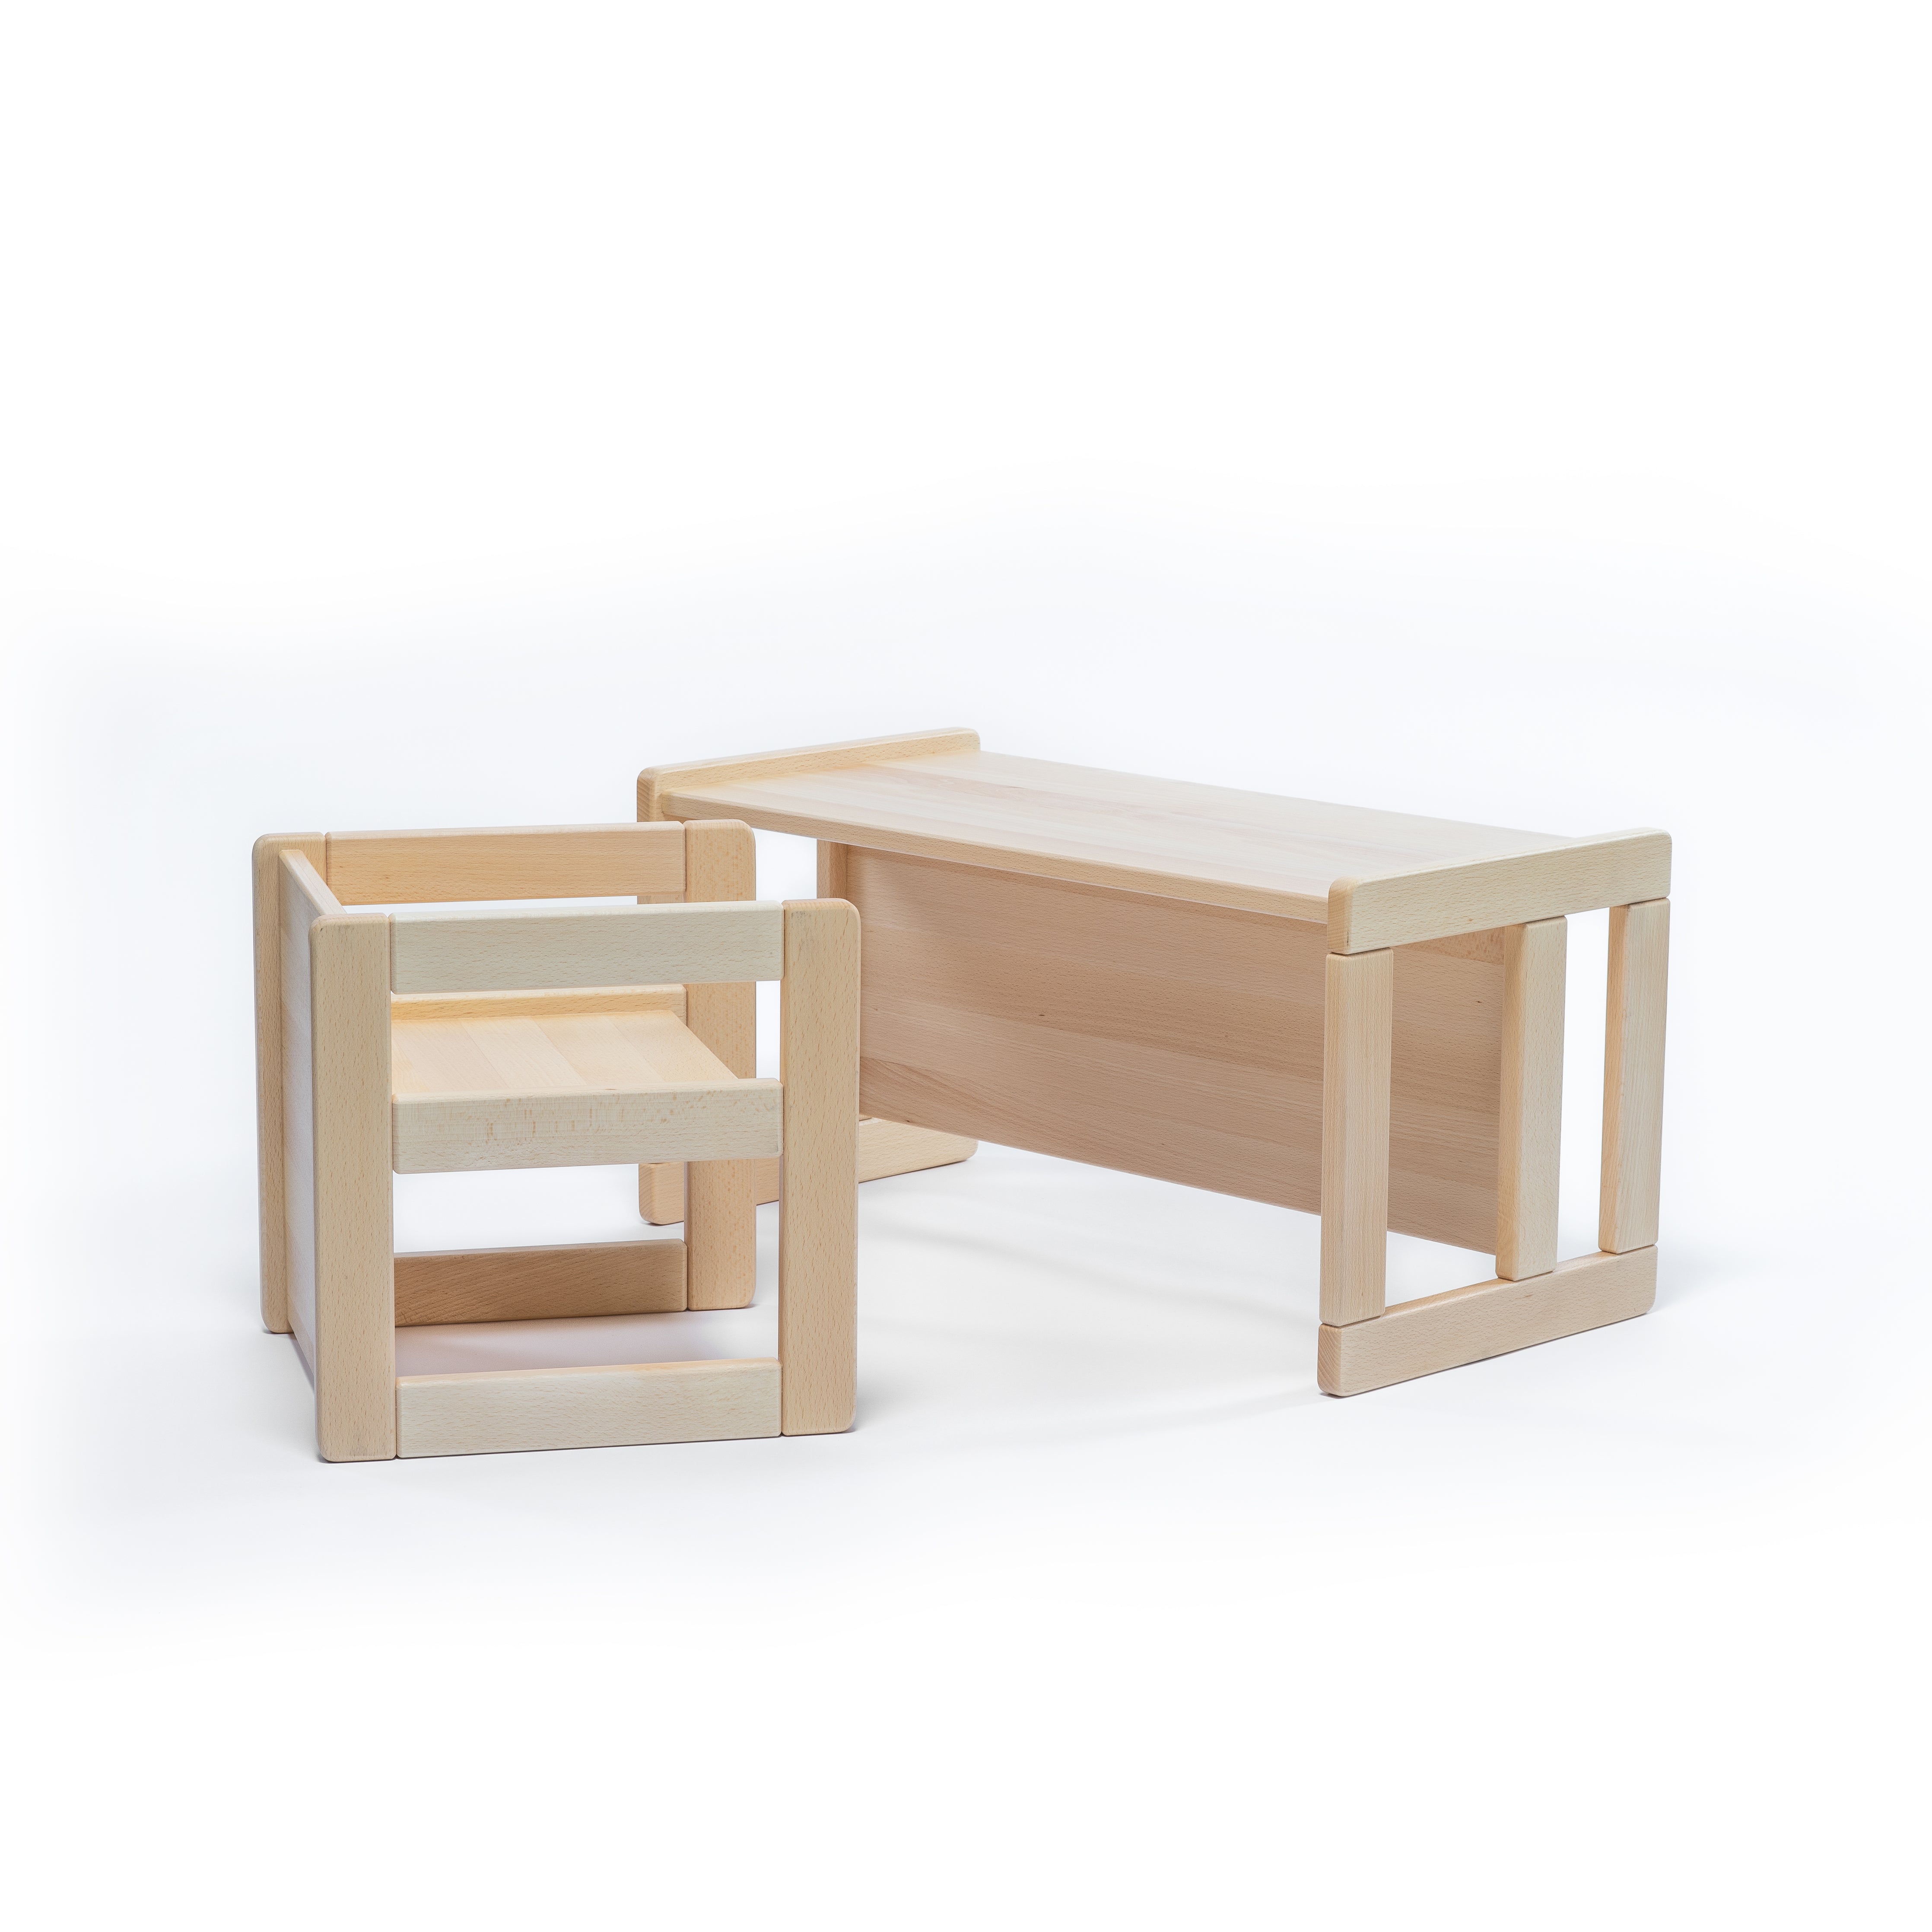 Verwandlungsstuhl und Verwandlungstisch aus Holz für Kita und Kindergarten